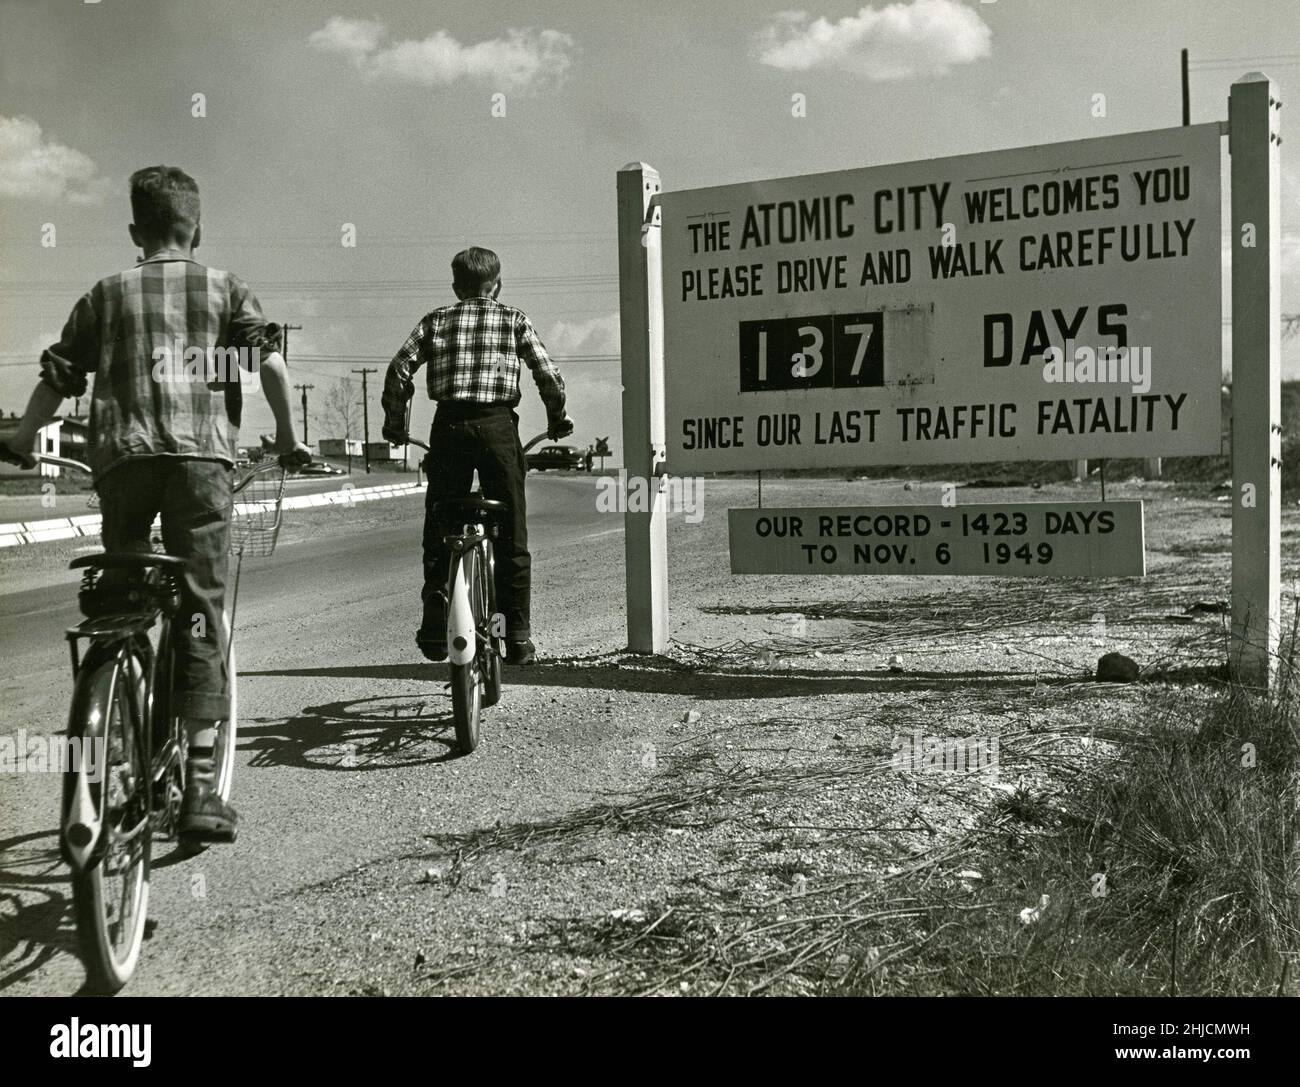 Un cartello che dà il benvenuto alla gente a Oak Ridge, Tennessee, altrimenti conosciuta come la città atomica, circa 1950. La città faceva parte di 59.000 acri acquisiti dal governo degli Stati Uniti per il progetto Manhattan, che fu istituito per sviluppare armi nucleari durante la seconda Guerra Mondiale. Il cartello recita: 'La città atomica vi dà il benvenuto. Guidare e camminare con cautela. 137 giorni dalla nostra ultima fatalità di traffico. Il nostro record - da 1423 giorni al 6 novembre 1949." Foto Stock